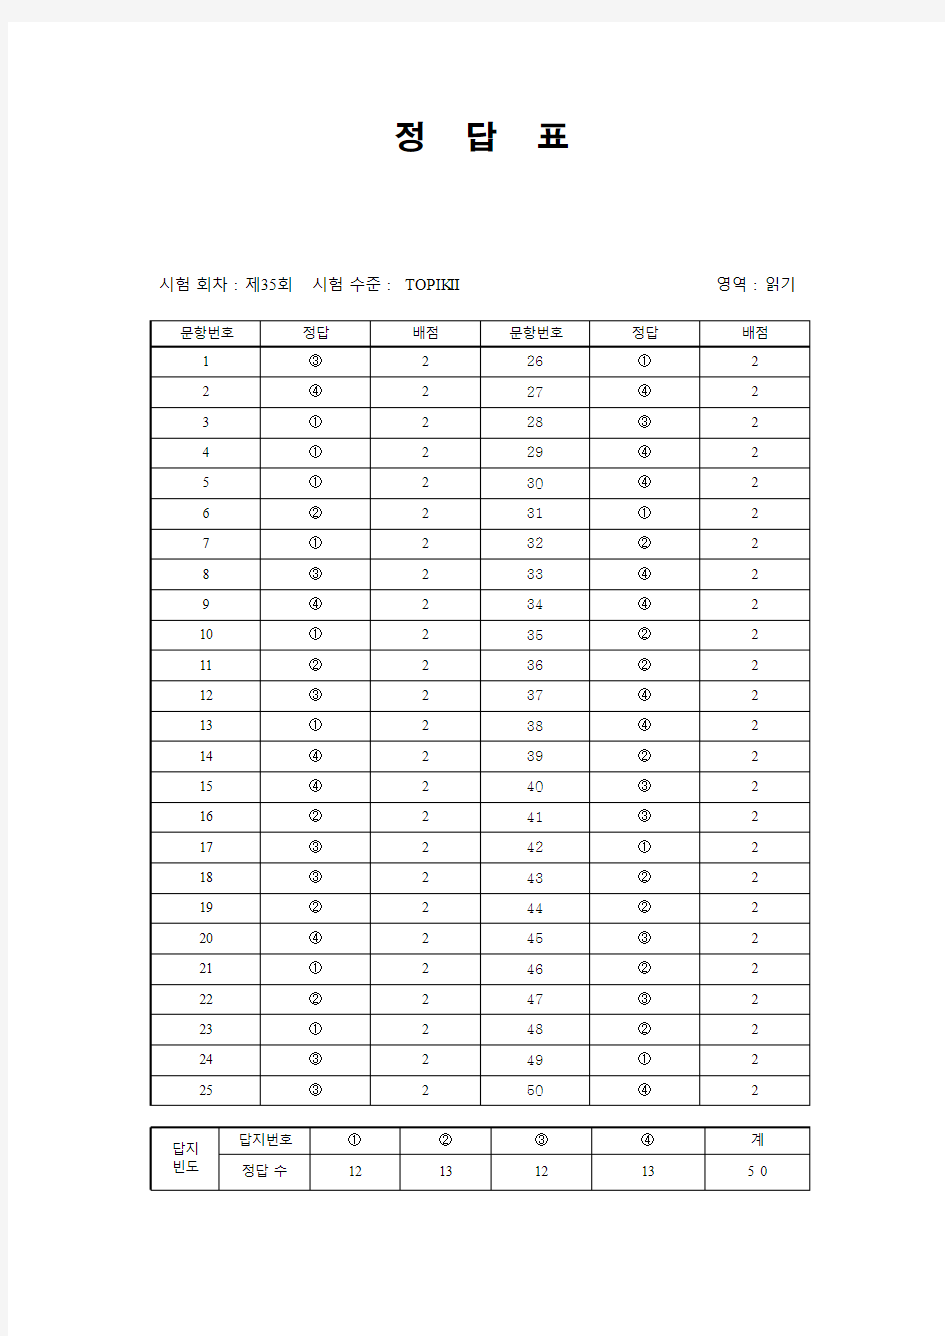 韩国语能力考试(TOPIK)真题资料【TOPIK35届中高级】35届 TOPIK 2_阅读答案